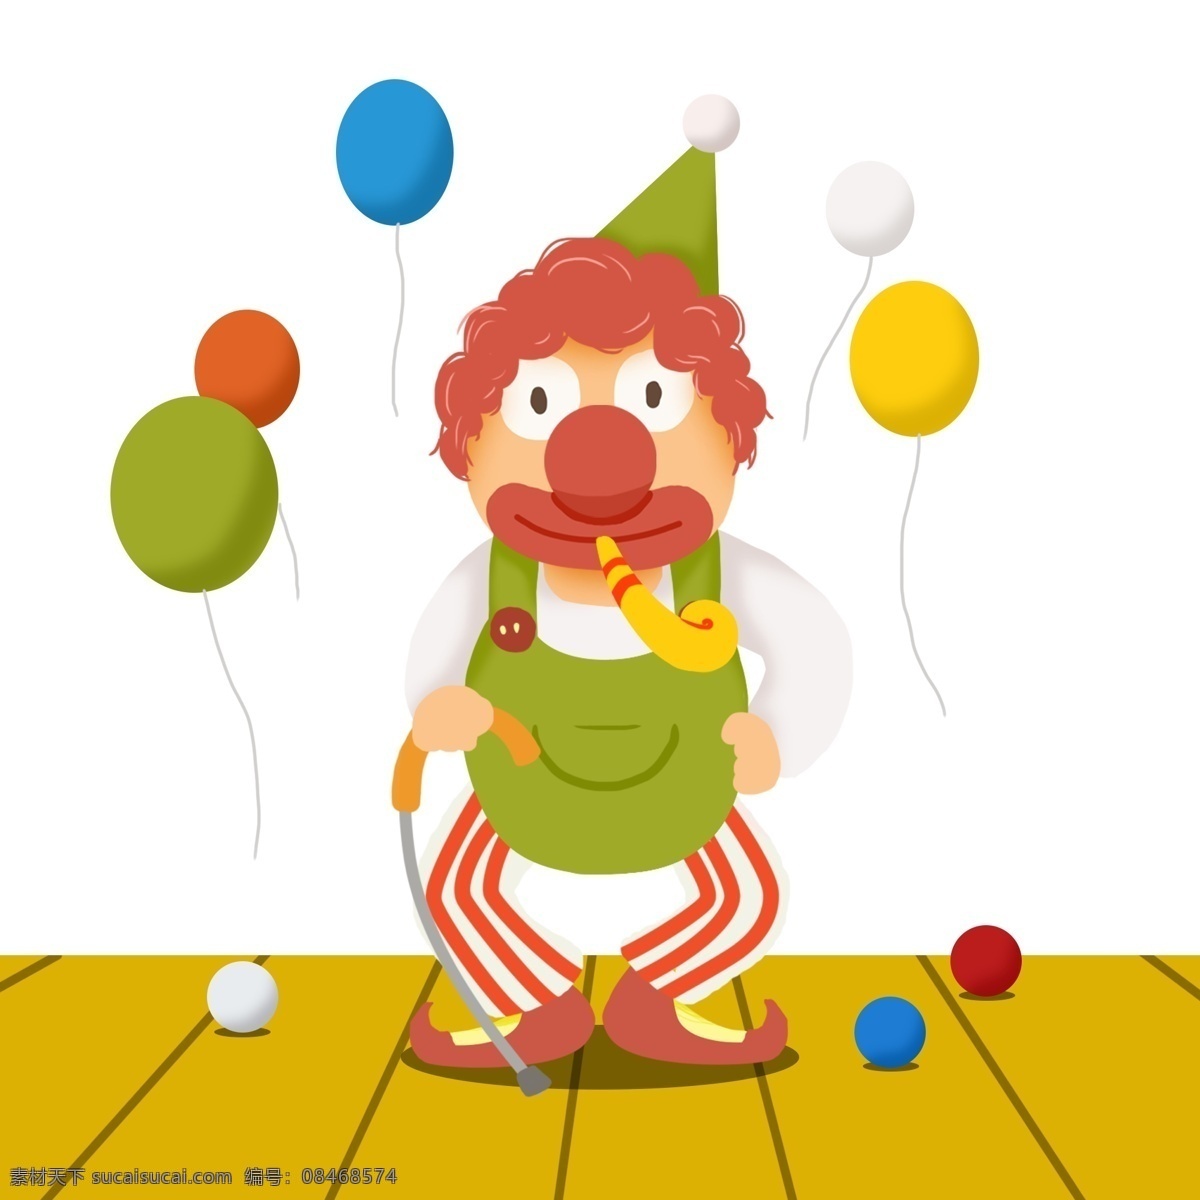 六一儿童节 换 马戏团 小丑 欢乐 彩色 多彩 快乐小丑 彩色气球 小彩球 节目表演 小朋友舞台 传递快乐 庆祝节日